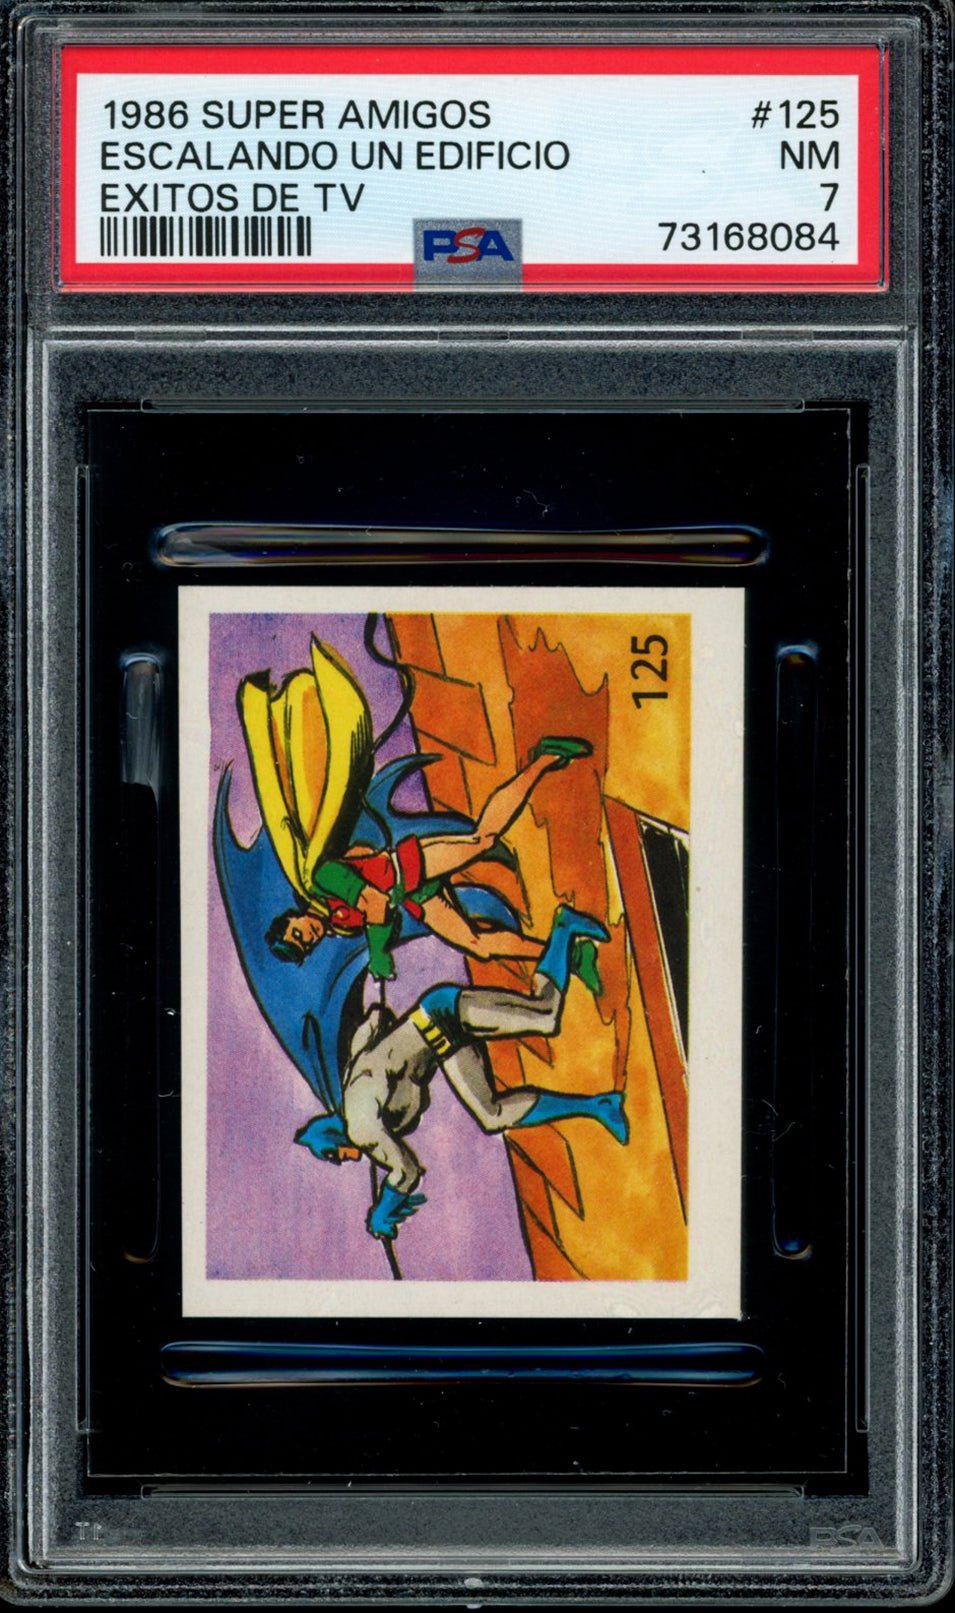 BATMAN & ROBIN PSA 7 1986 Reyauca Super Amigos Exitos de TV #125 DC Comics Base Graded Cards - Hobby Gems